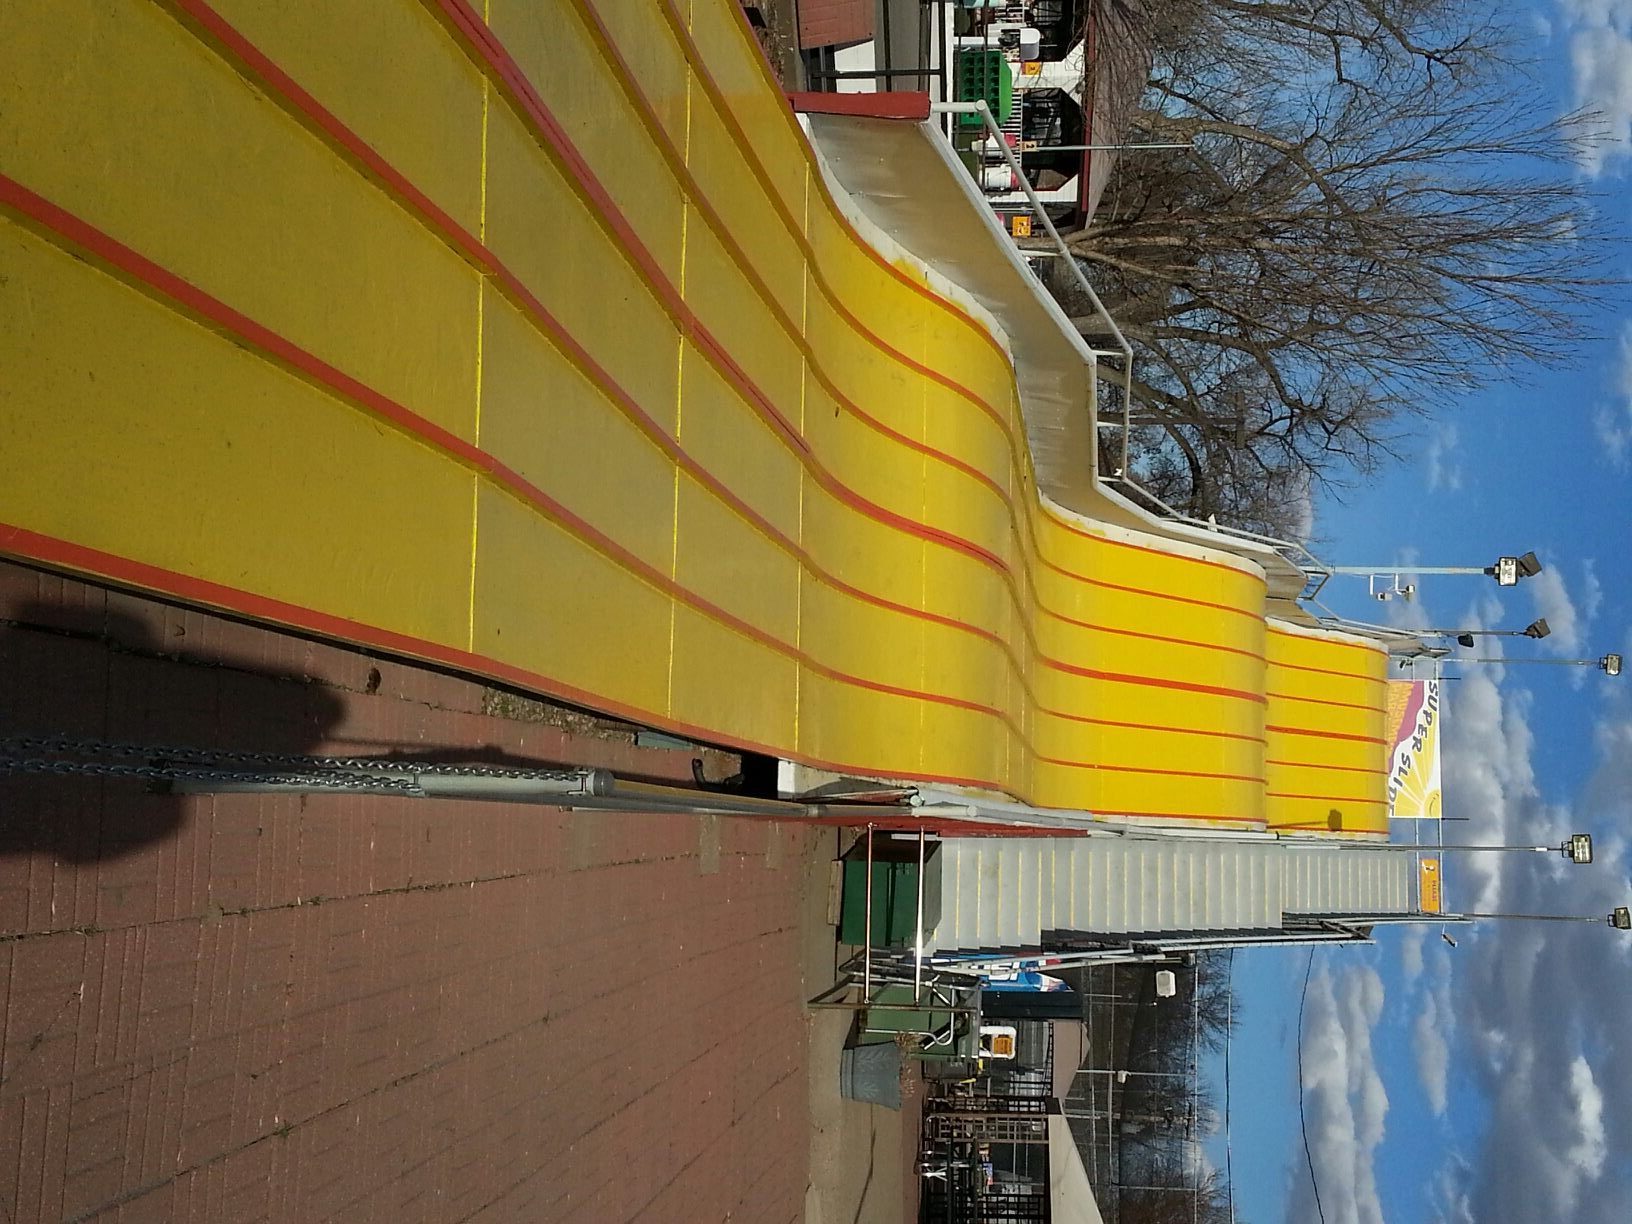 Super Slide Amusement Park